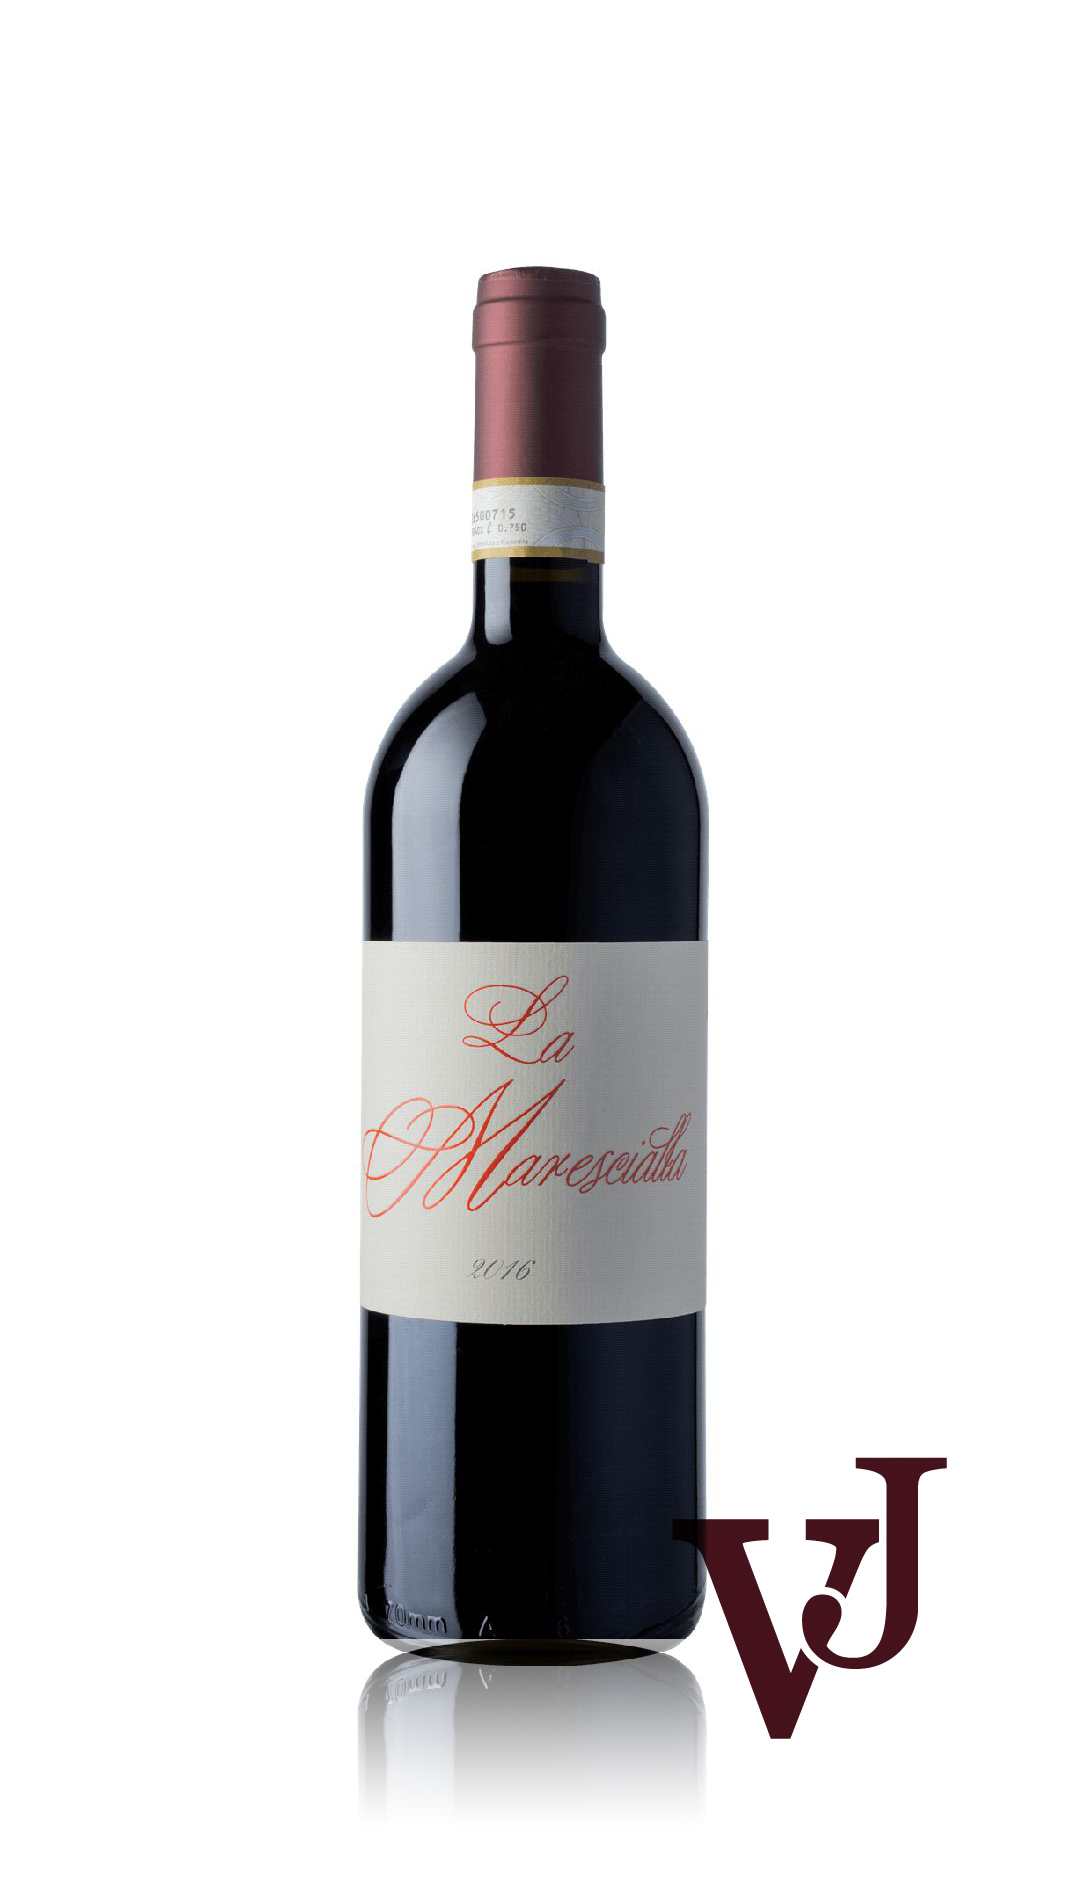 Rött Vin - La Marescialla Barbera d`Asti Superiore artikel nummer 7863601 från producenten Agostino Pavia & Figli från området Italien